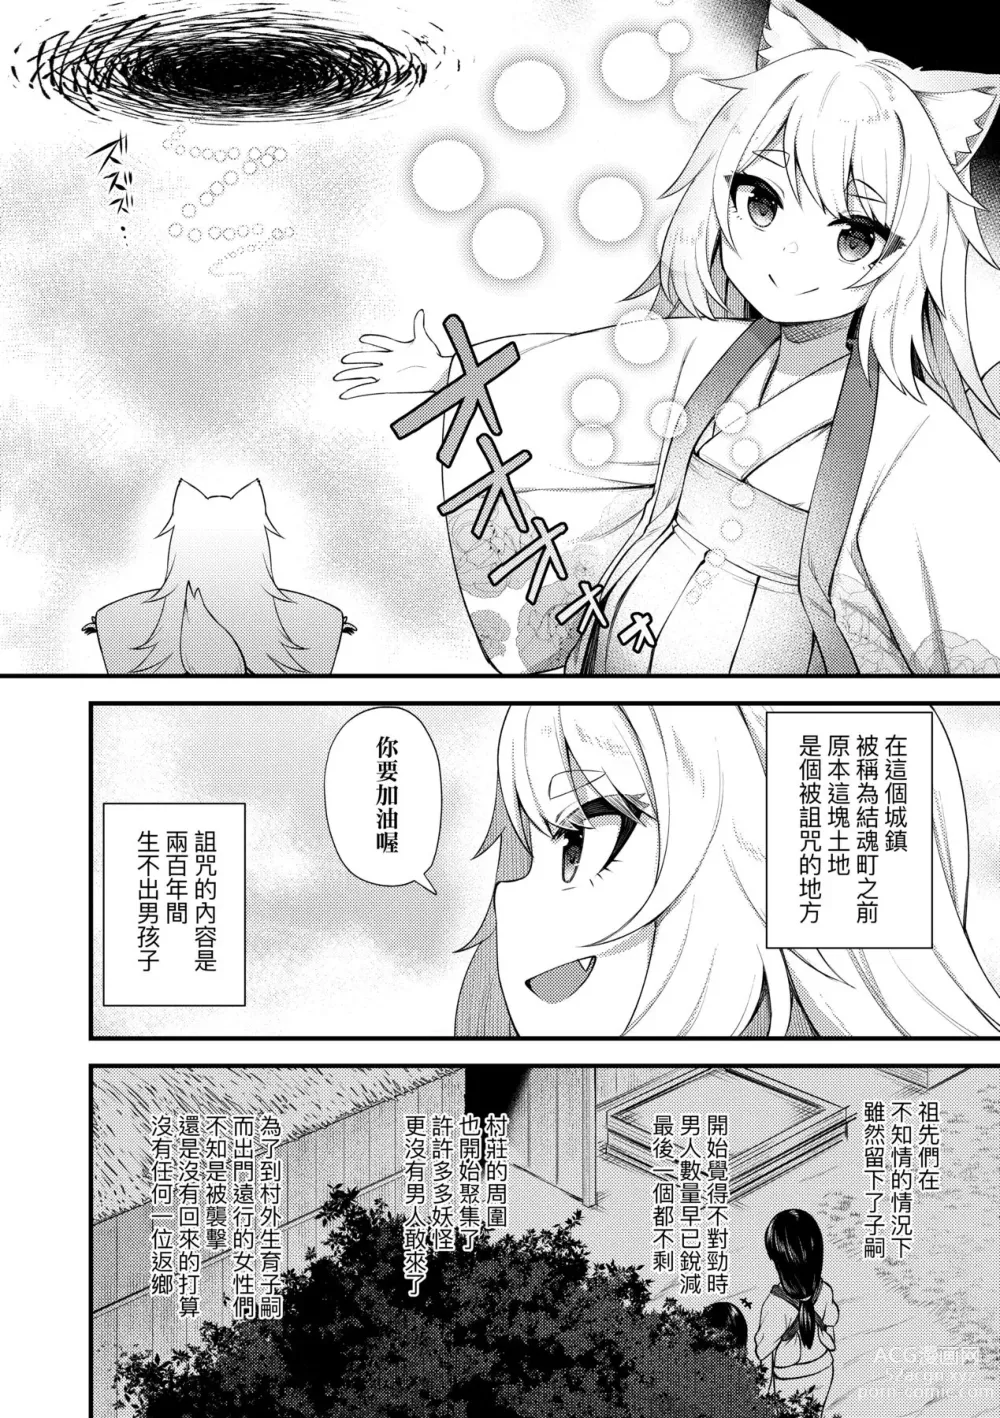 Page 193 of manga Chojyu Giga (decensored)